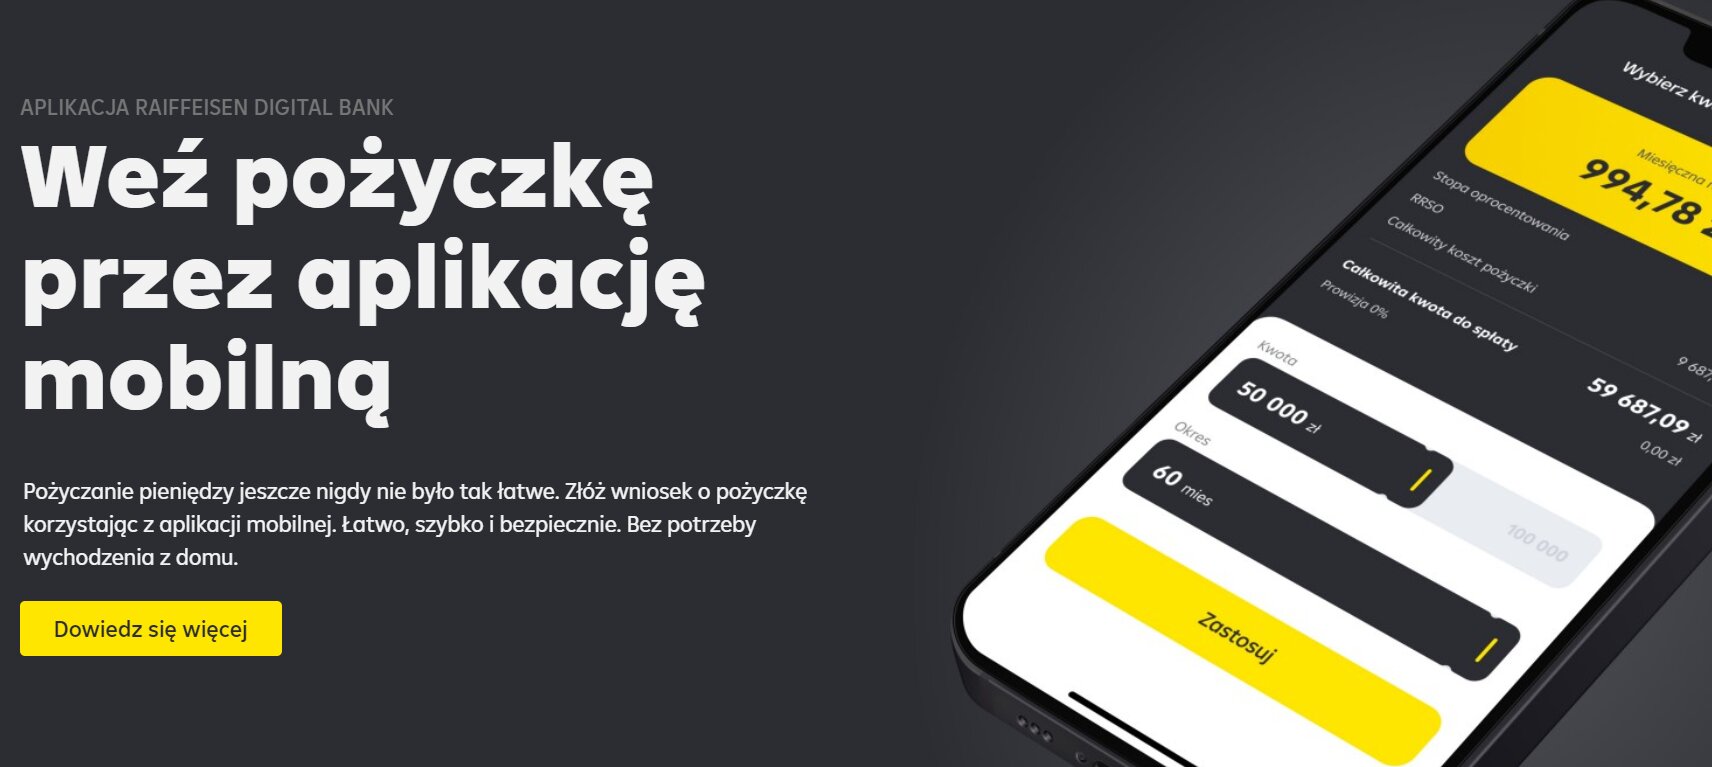 Raiffeisen Digital Bank debiutuje na polskim rynku